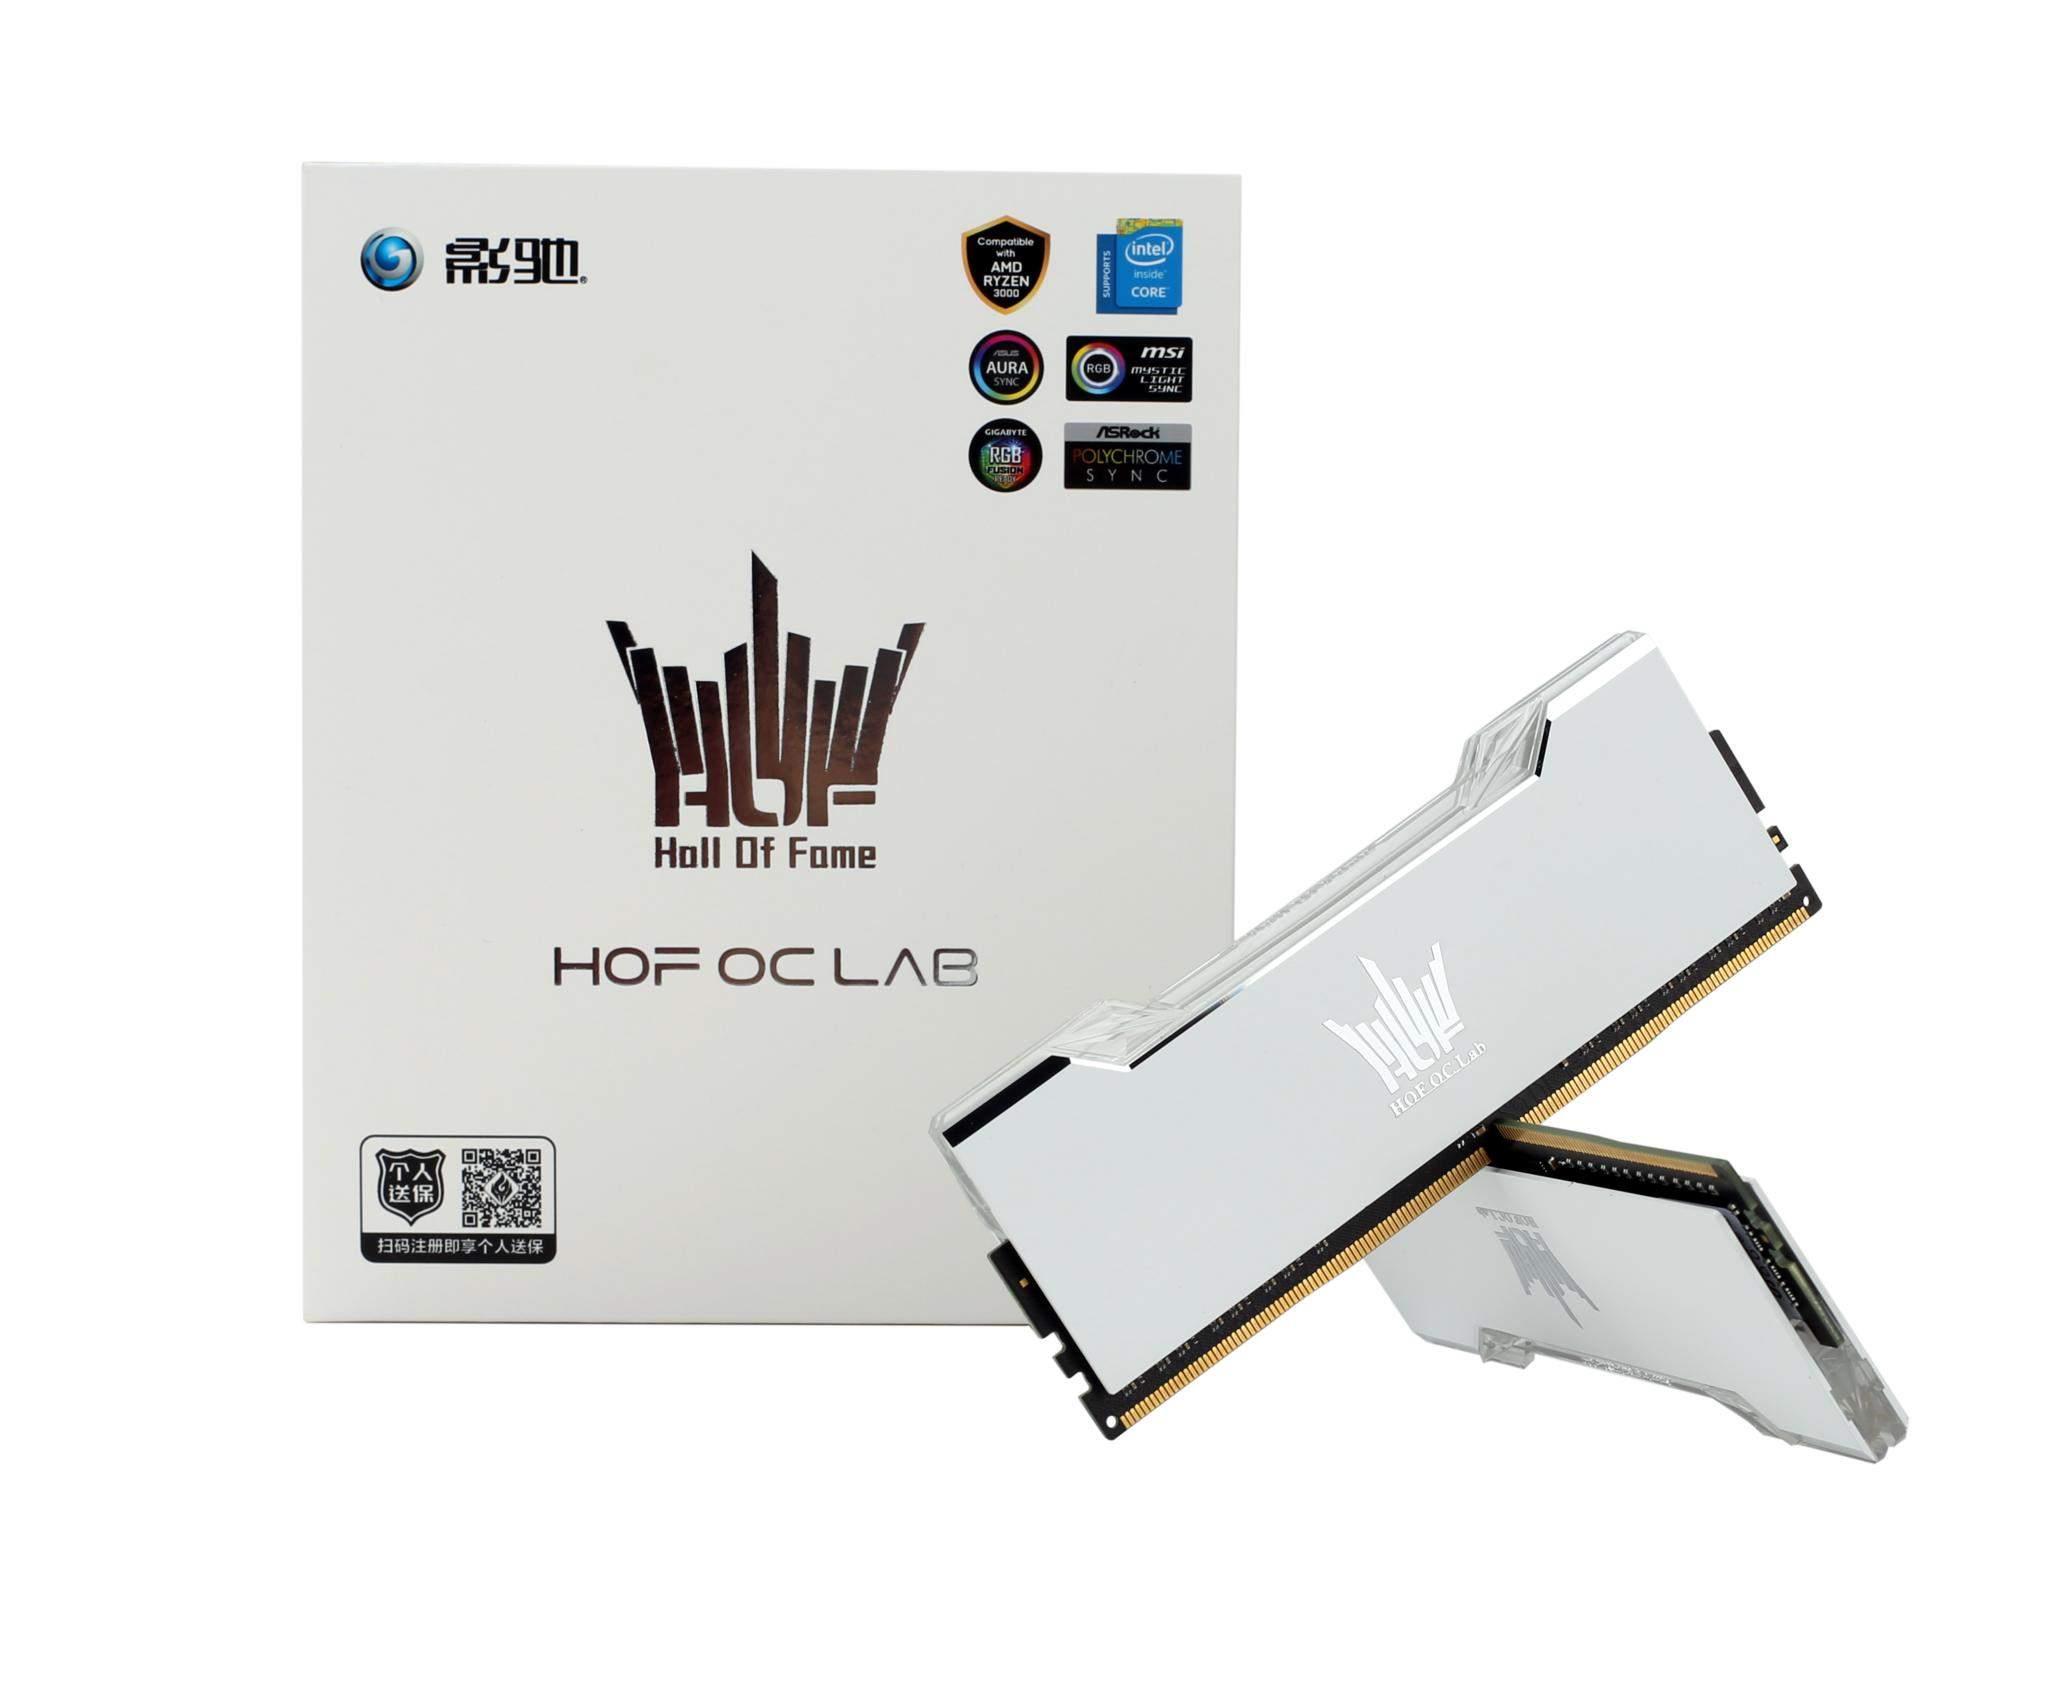 ホワイトブラウン GALAX HOF OC Lab Aurora RGB DDR4 - 通販 